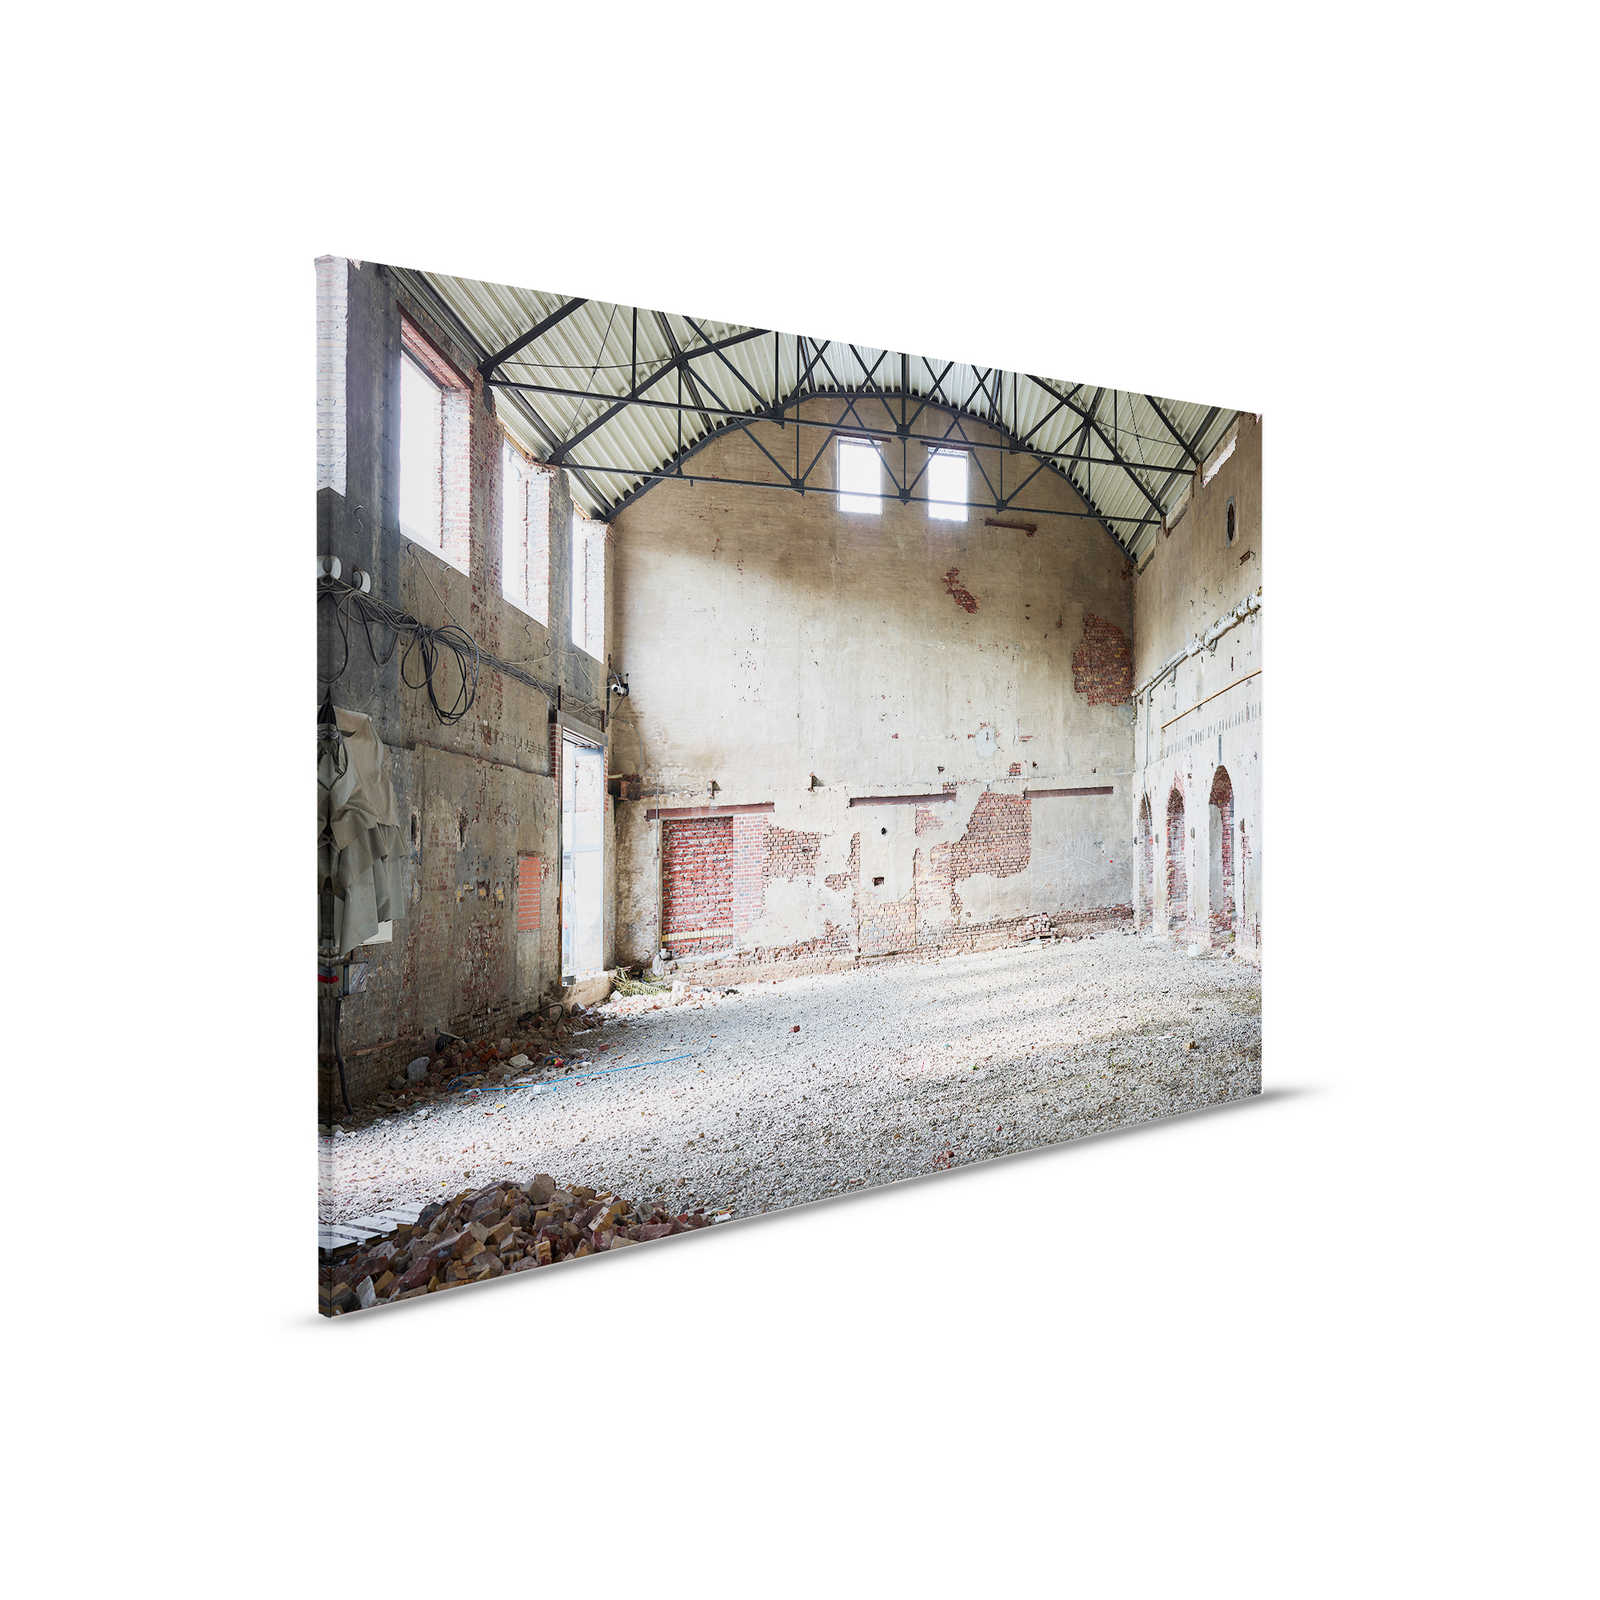         Leinwandbild mit verlassener Industriehalle – 0,90 m x 0,60 m
    